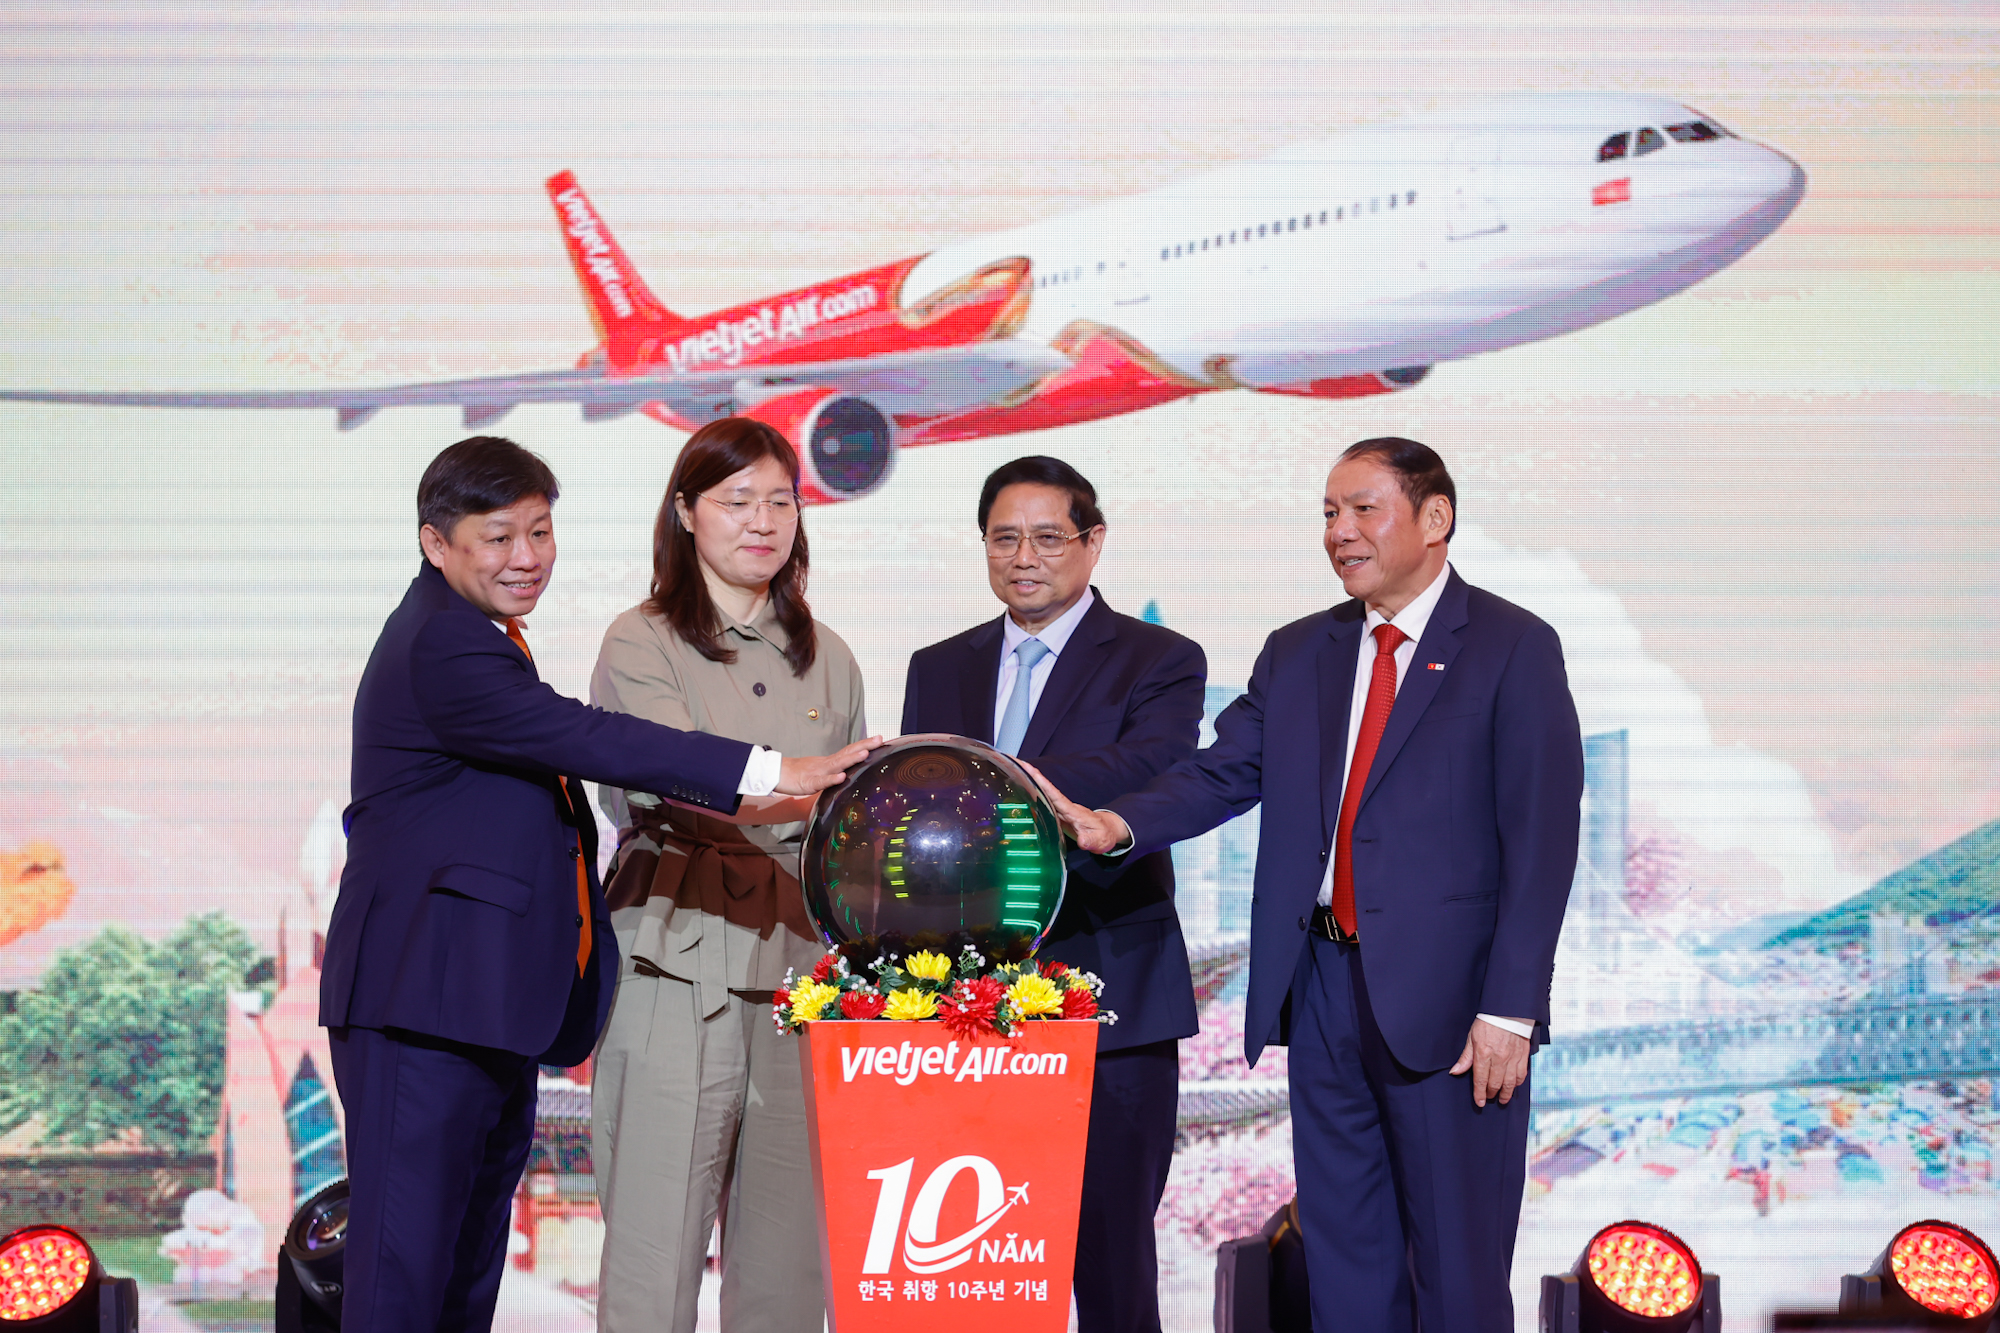 Hành trình 10 năm kết nối Việt Nam – Hàn Quốc của Vietjet, công bố đường bay mới Daegu – Nha Trang- Ảnh 2.